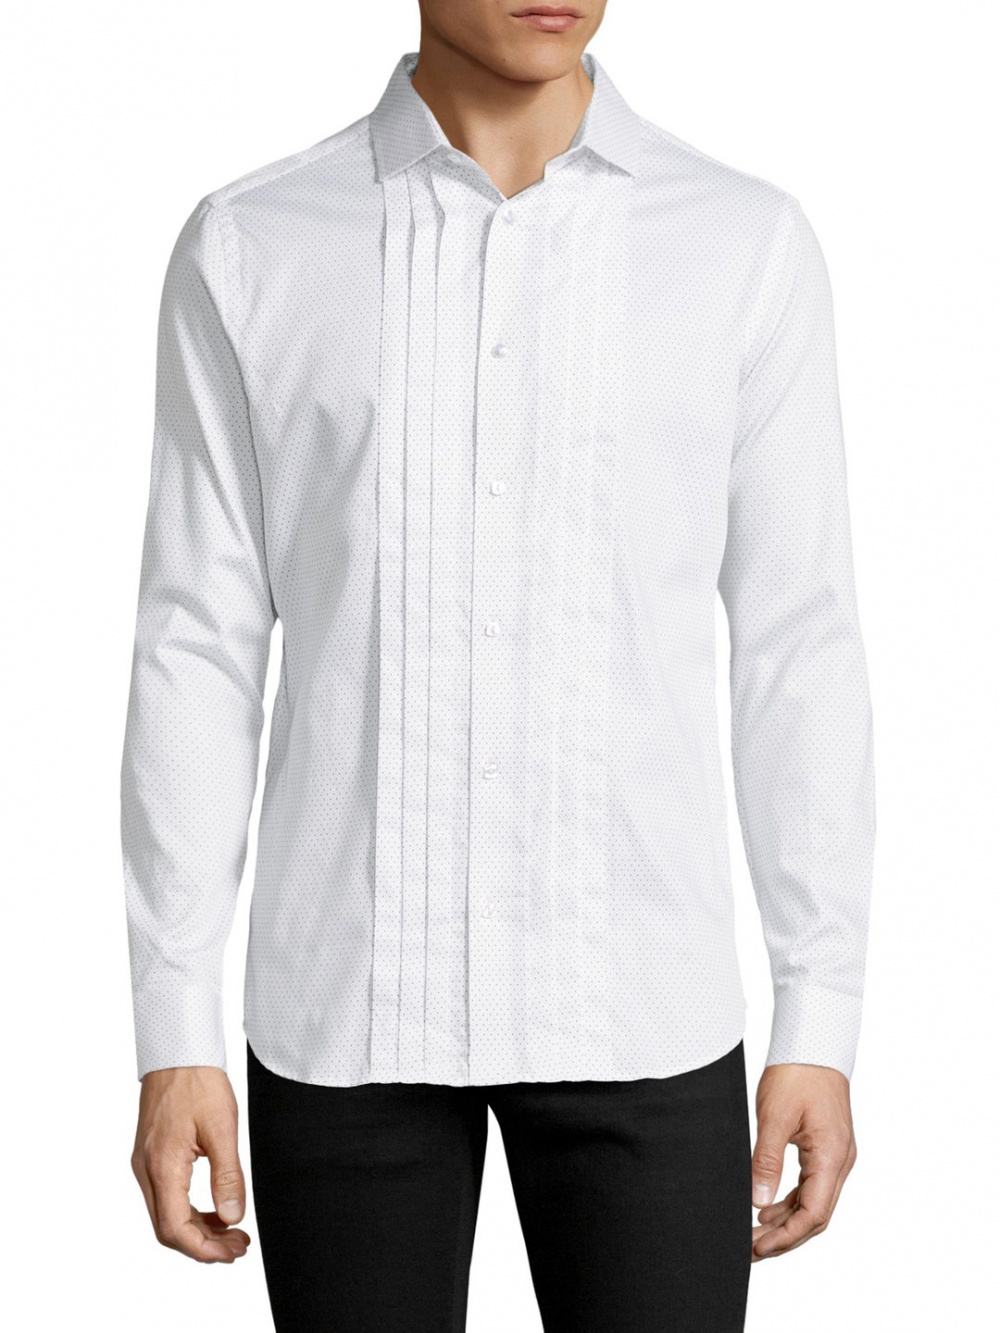 Мужская рубашка с длинным рукавом Karl Lagerfeld, размер L, на рос. 50